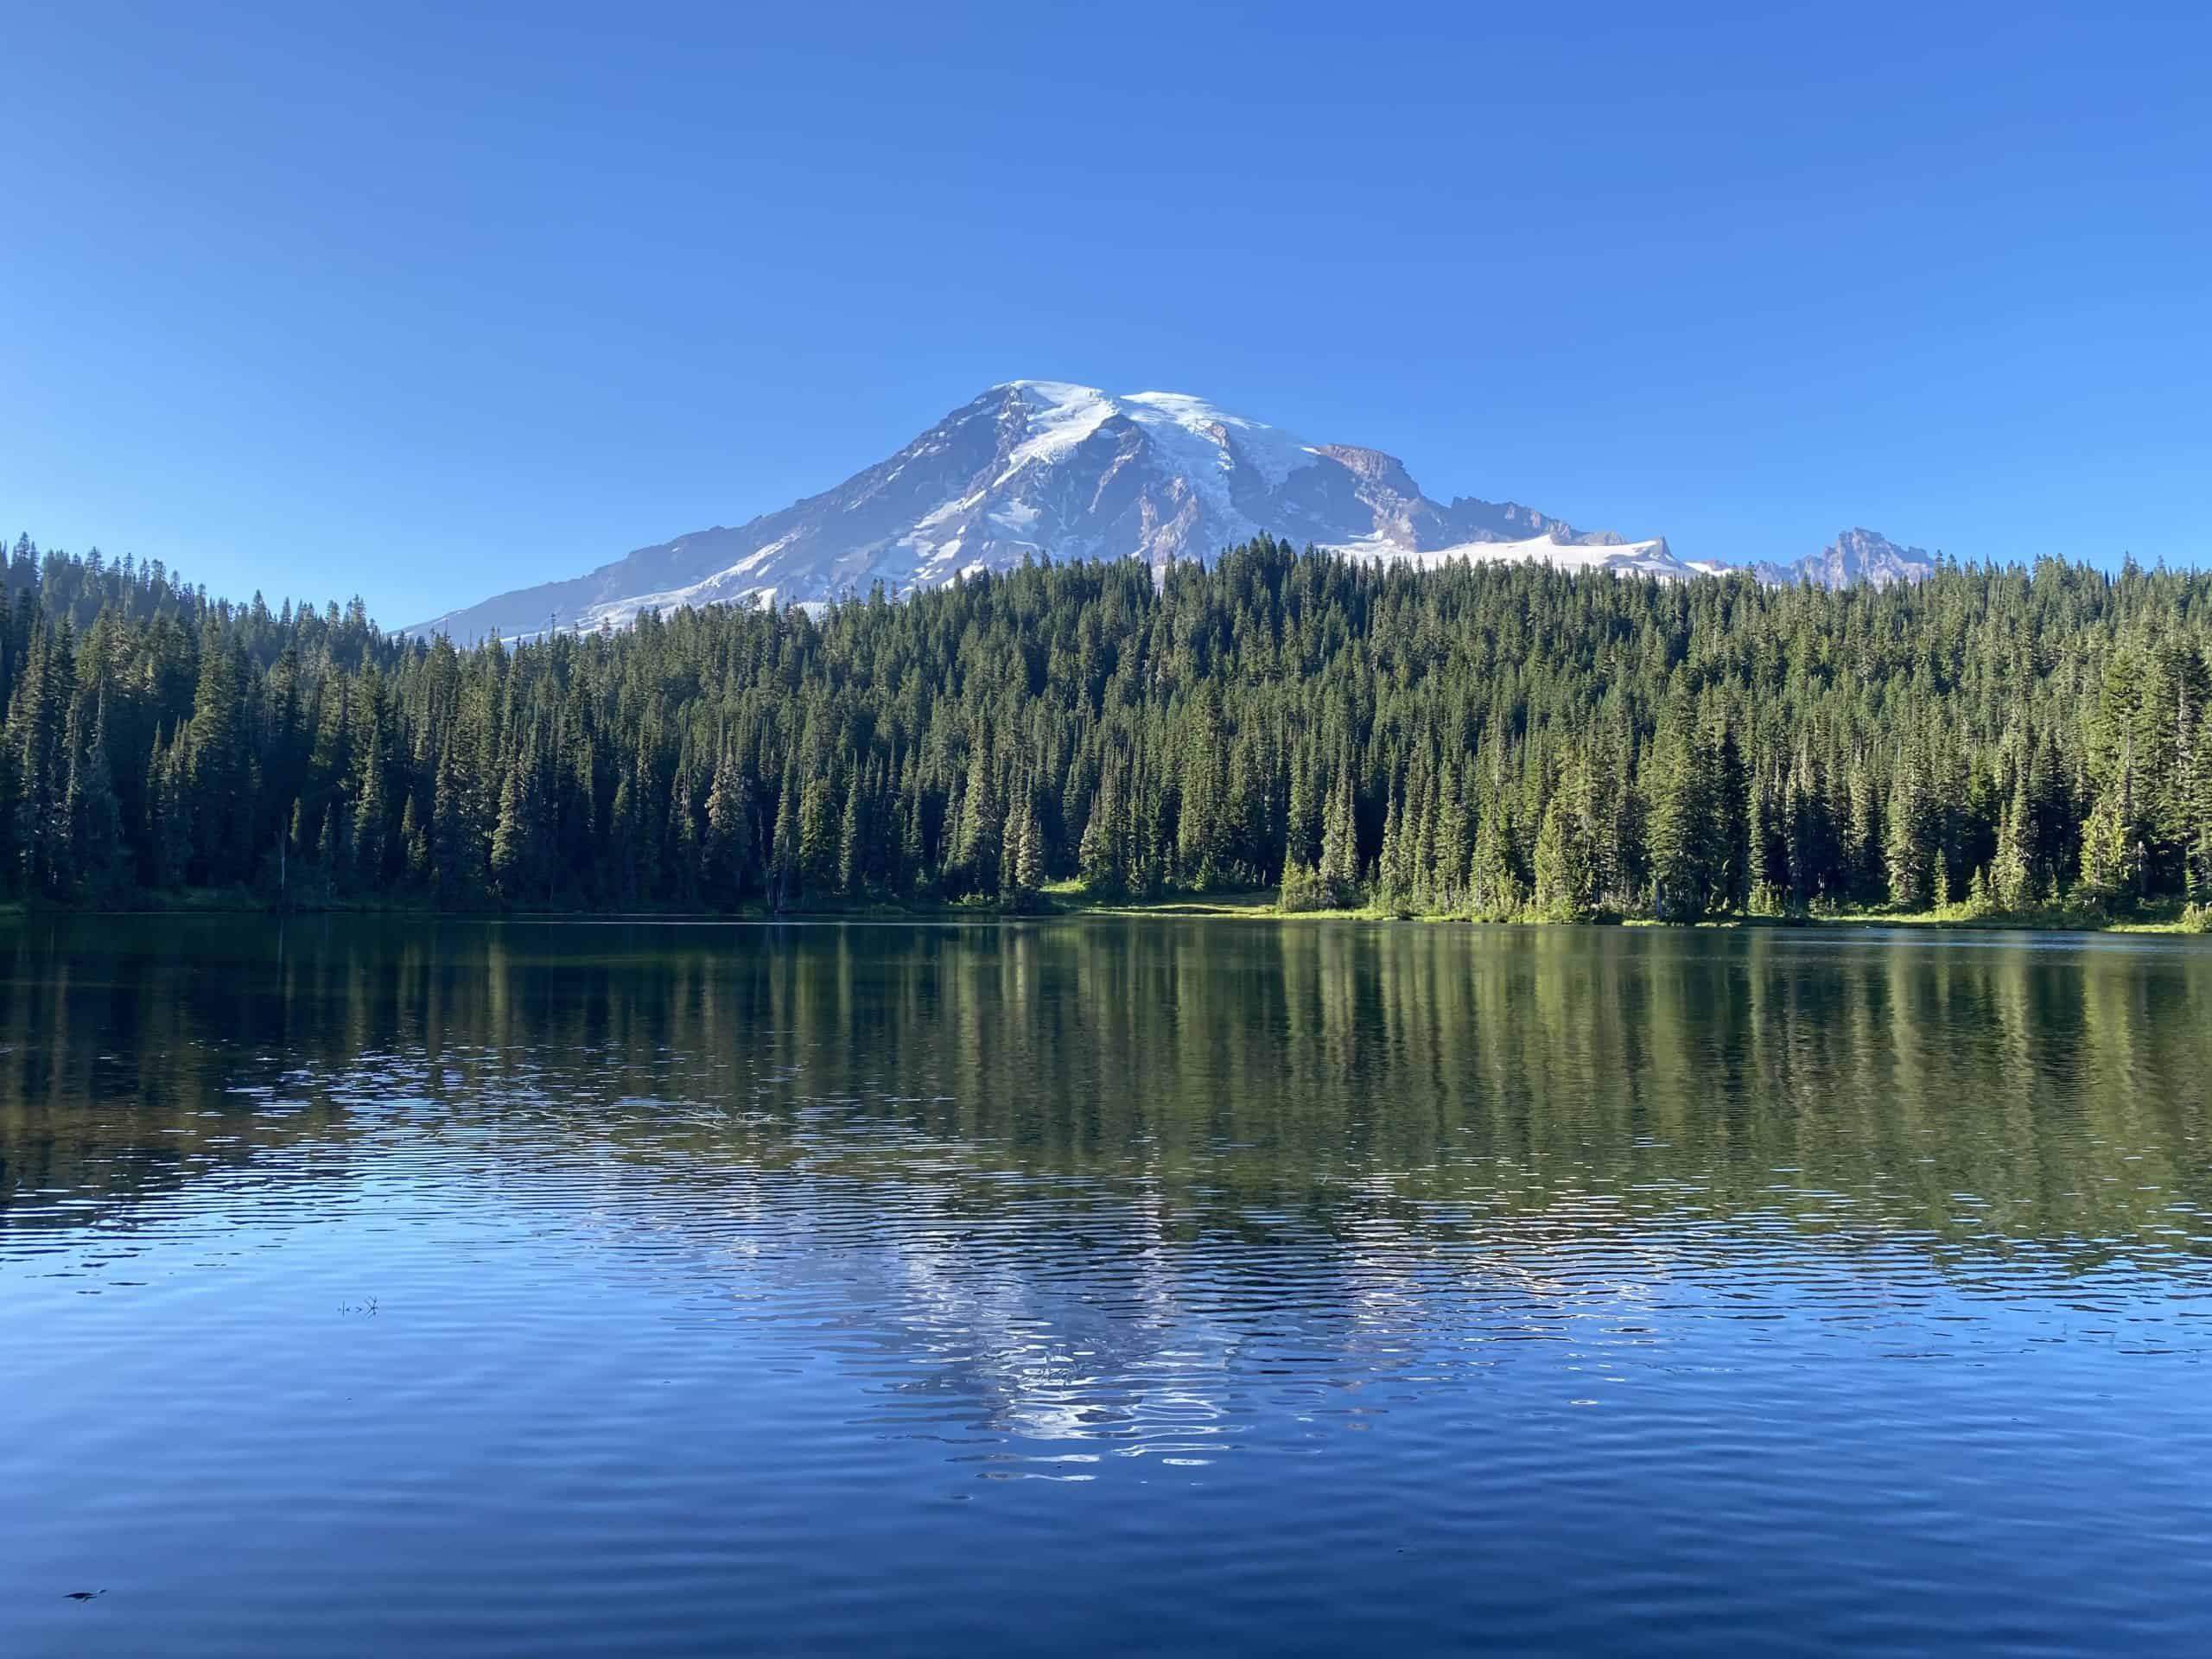 View at Reflection Lakes at Mount Rainier